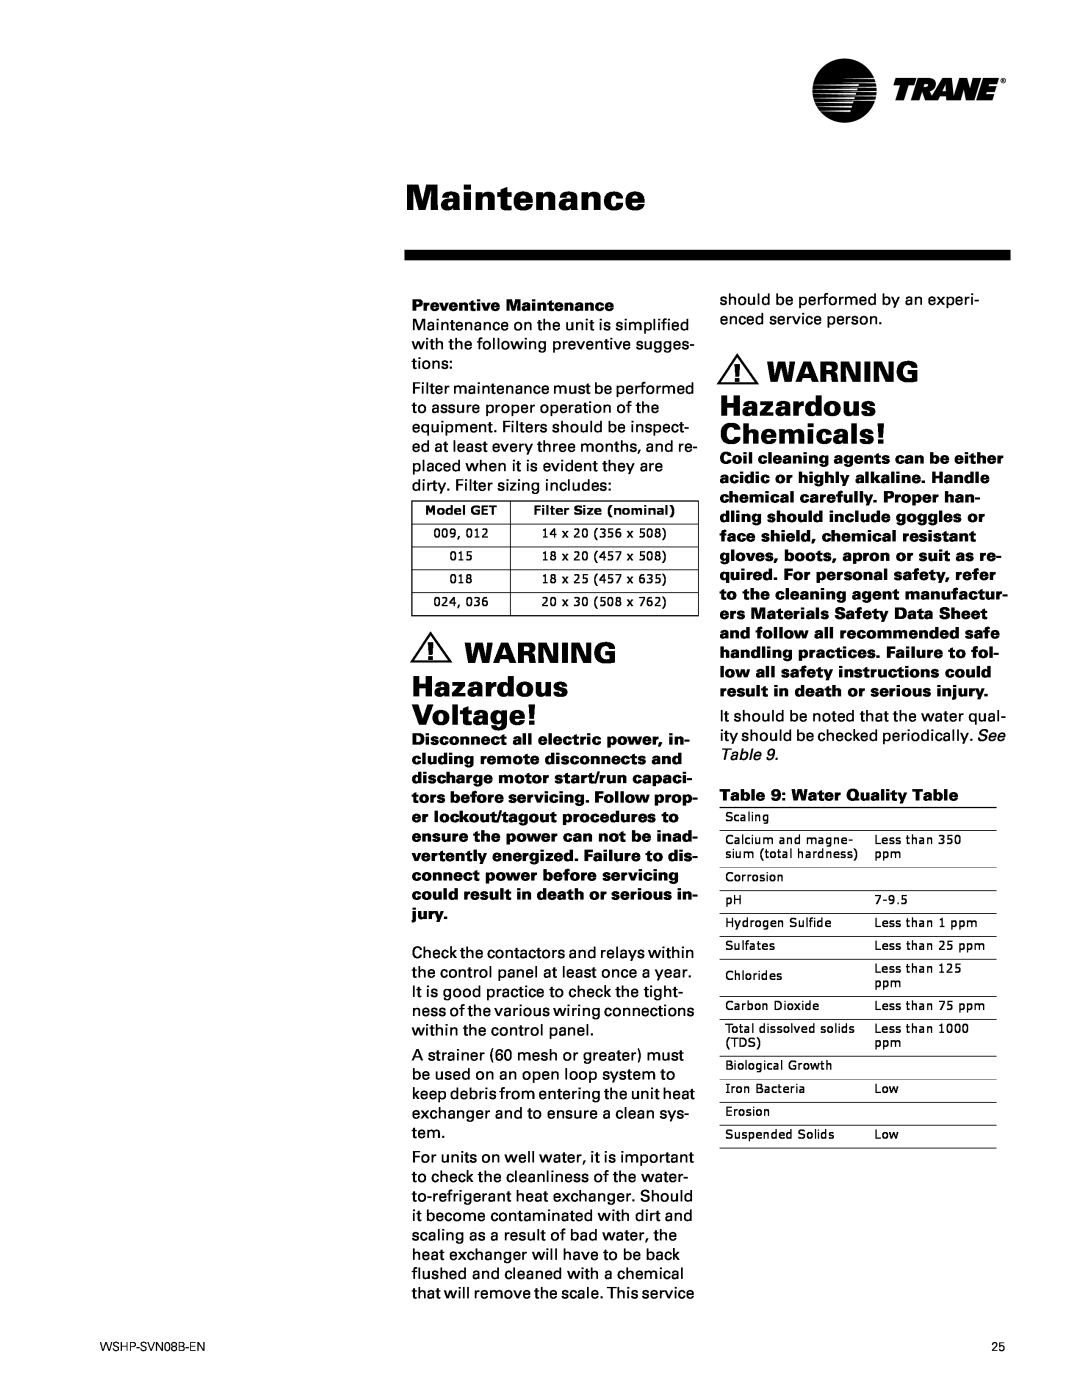 Trane GETB manual Hazardous Voltage, Hazardous Chemicals, Preventive Maintenance, Water Quality Table 